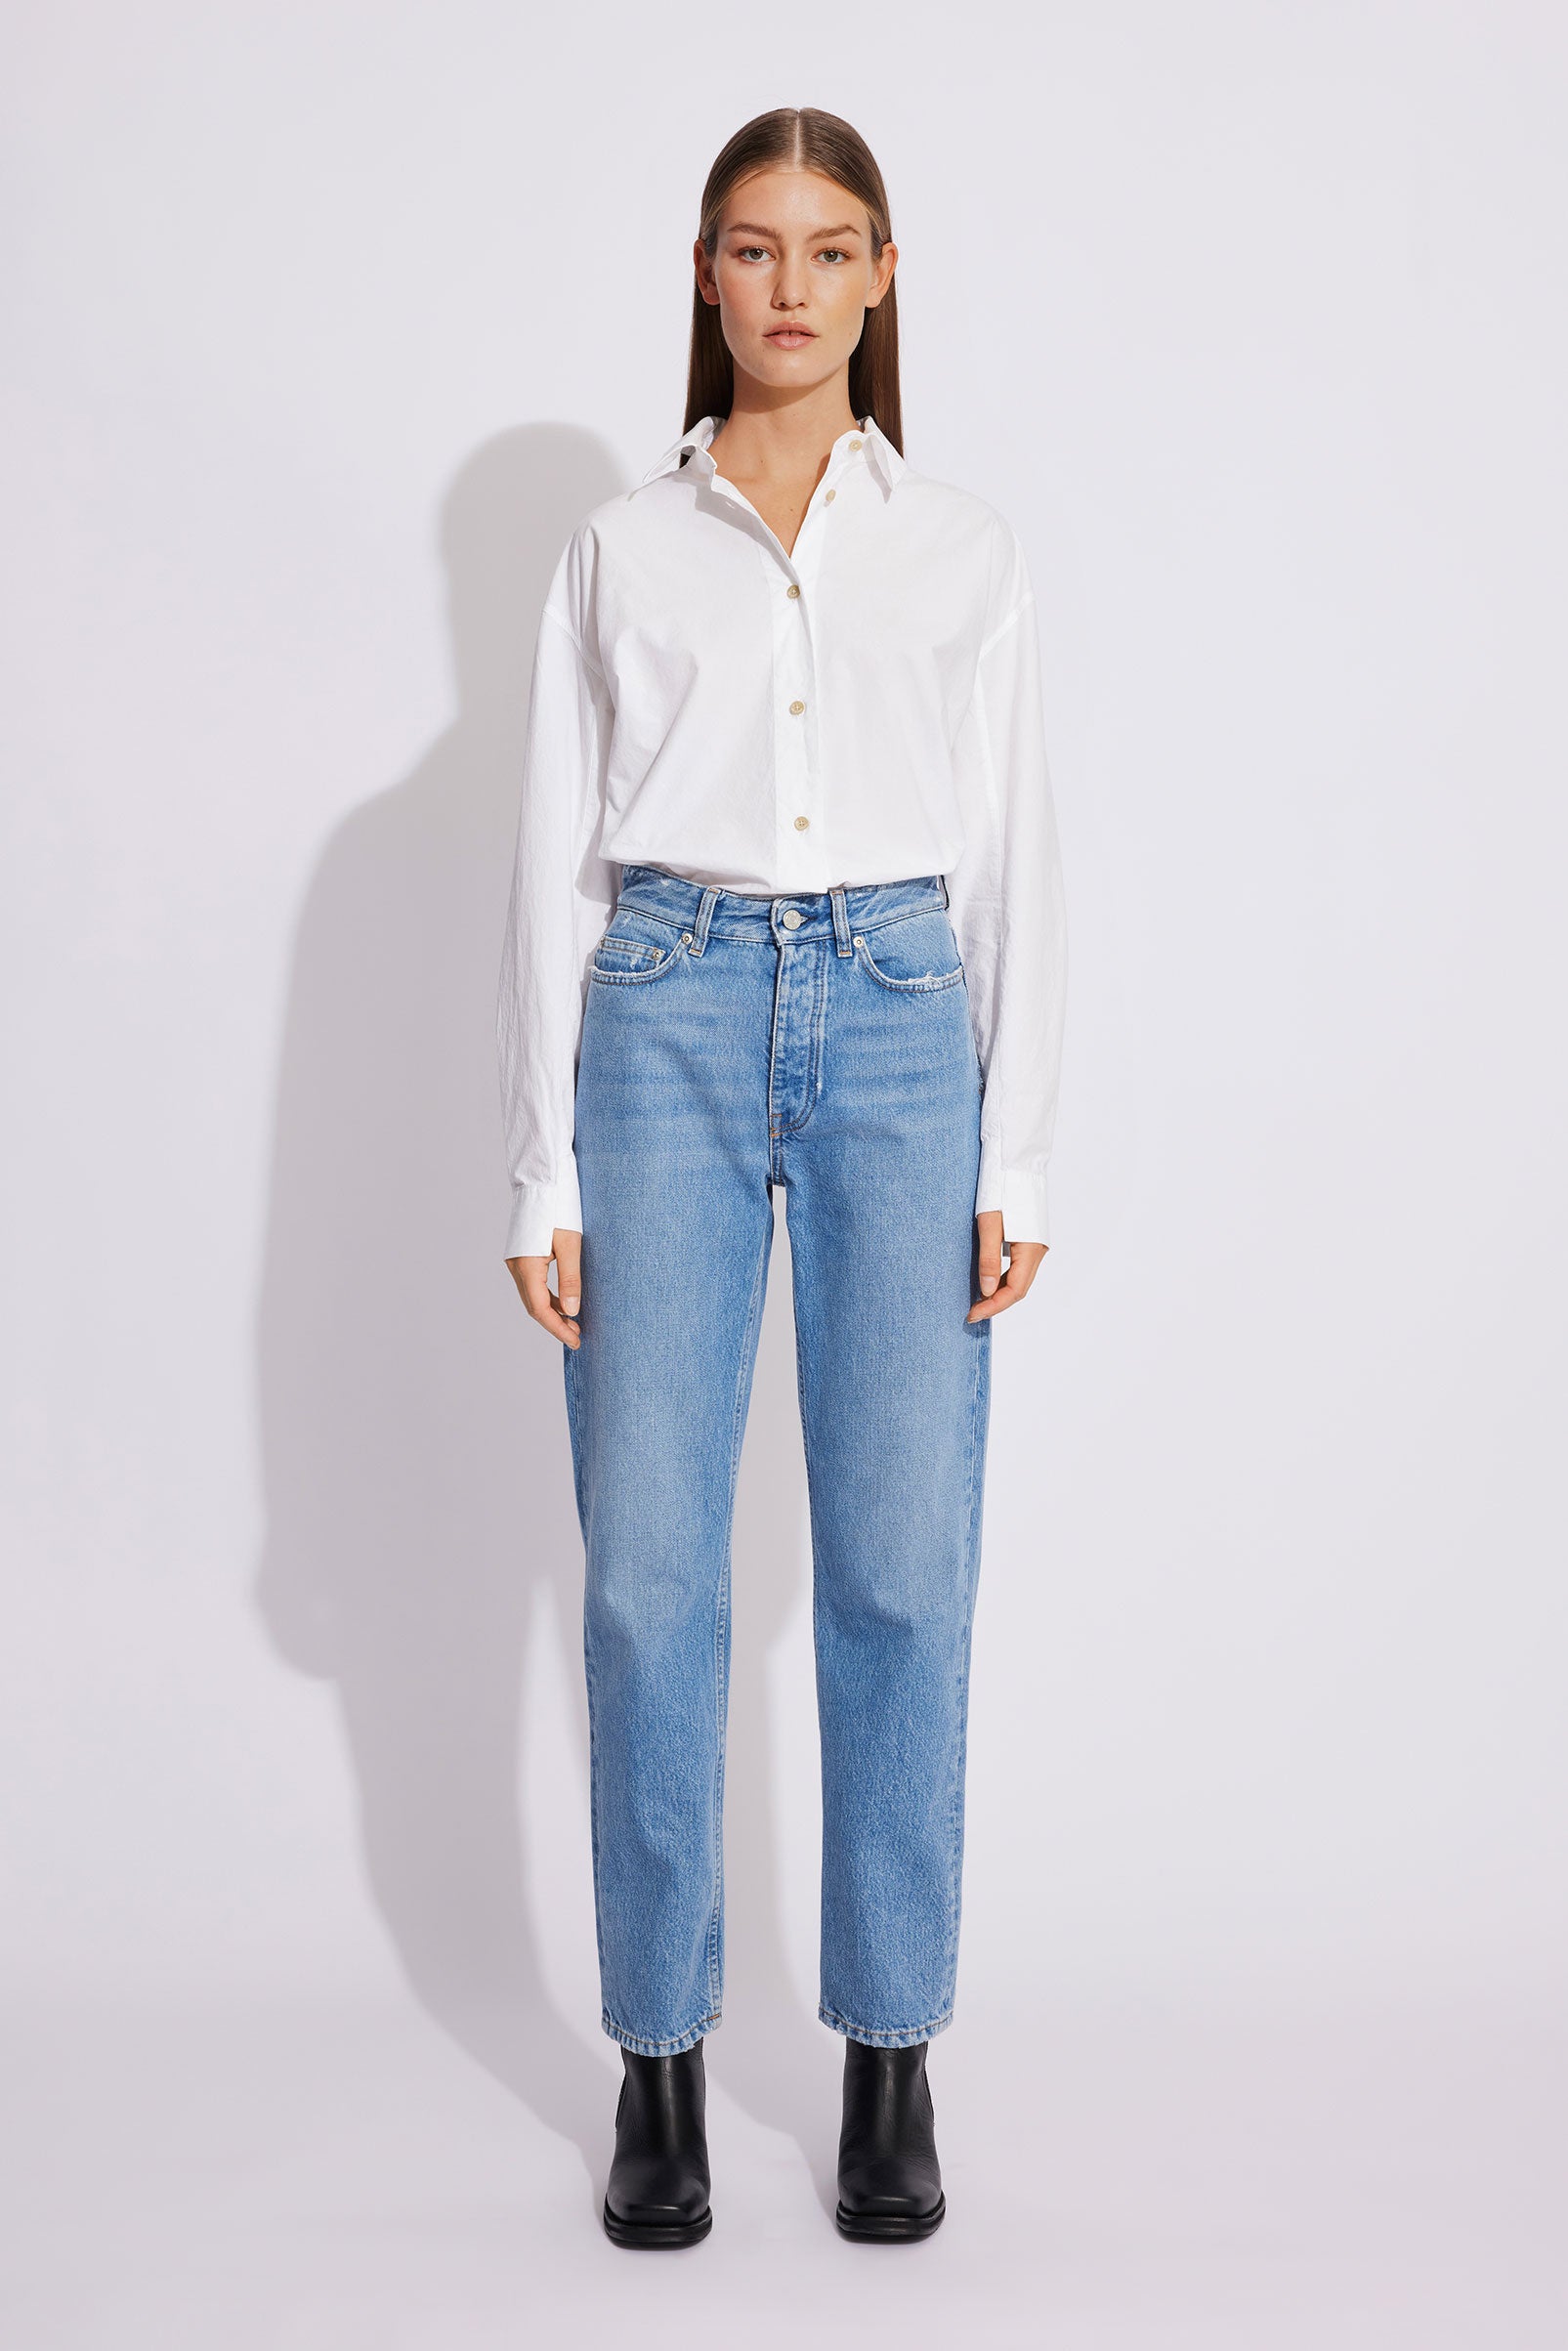 Women's Jeans – Online Store